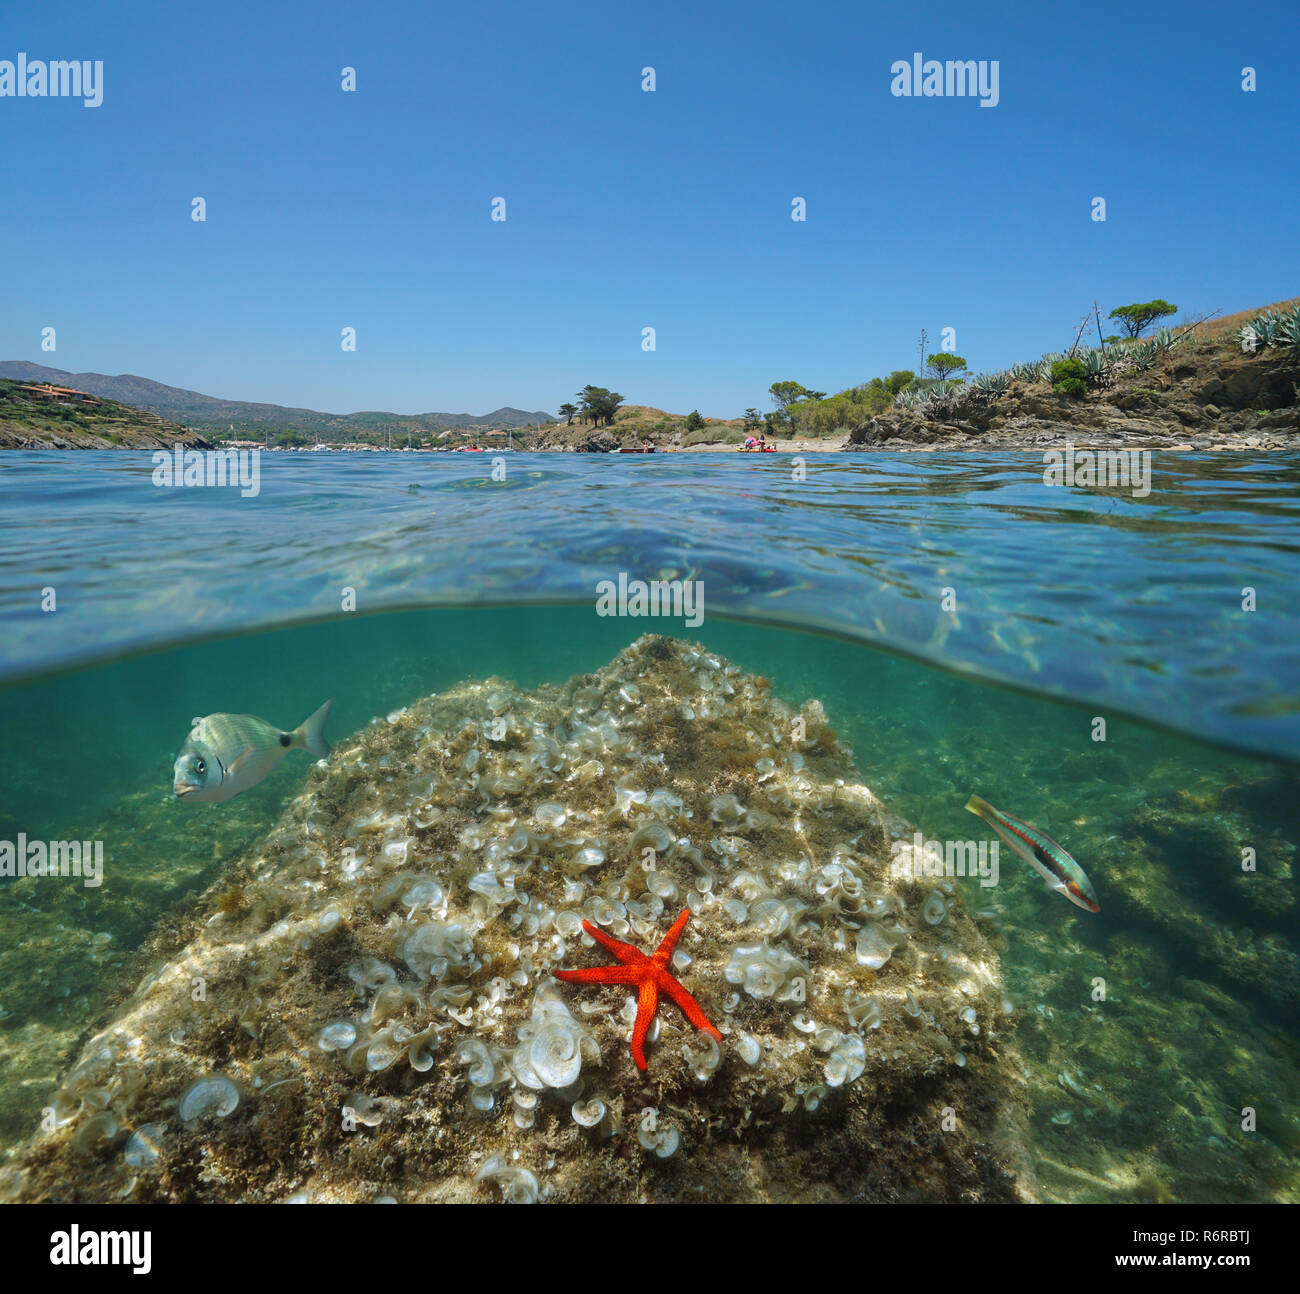 Mittelmeer küste und Rock mit Seesternen und Fischen unter Wasser, geteilte Ansicht Hälfte oberhalb und unterhalb der Wasseroberfläche, Spanien, Cadaqués, Costa Brava, Spanien Stockfoto